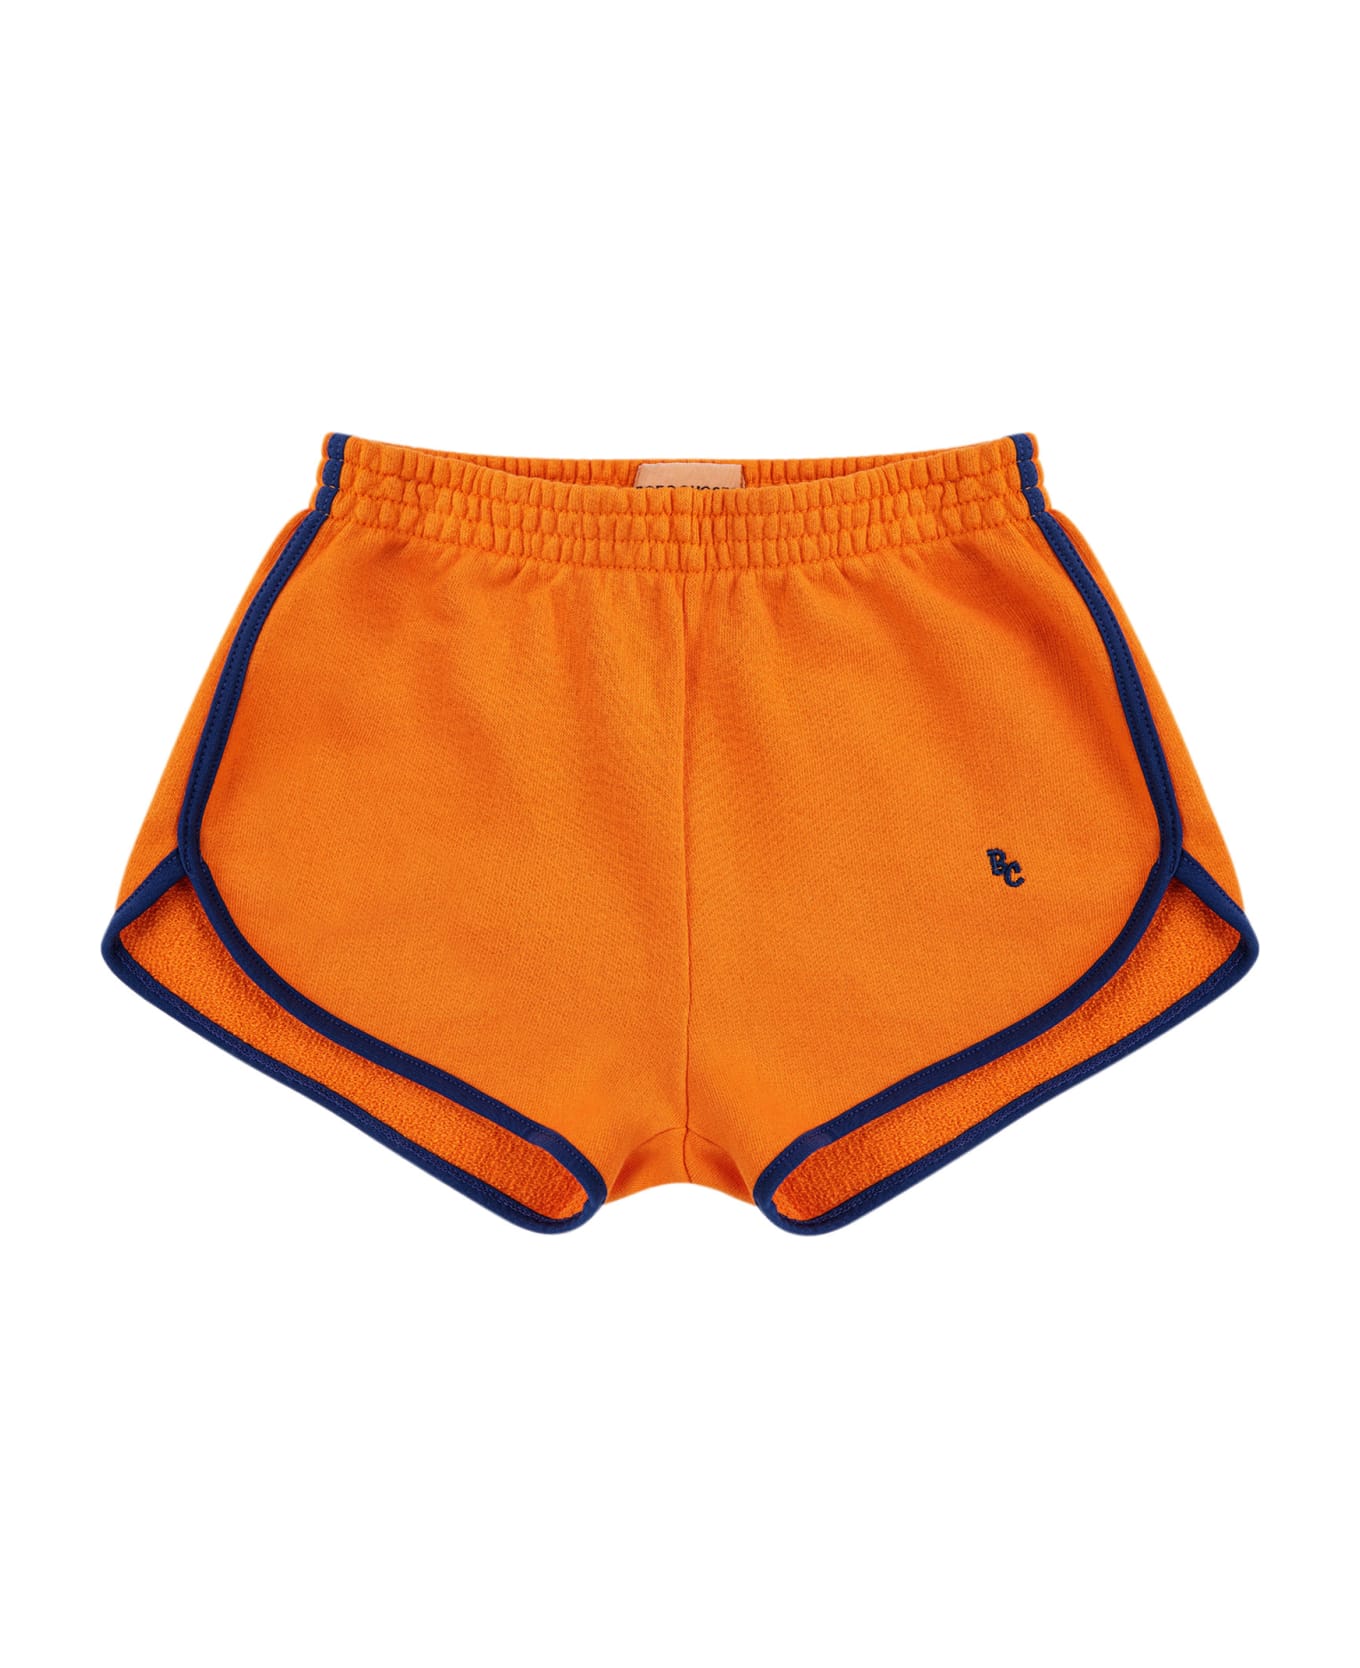 Bobo Choses Orange Shorts For Kids With Logo - Orange